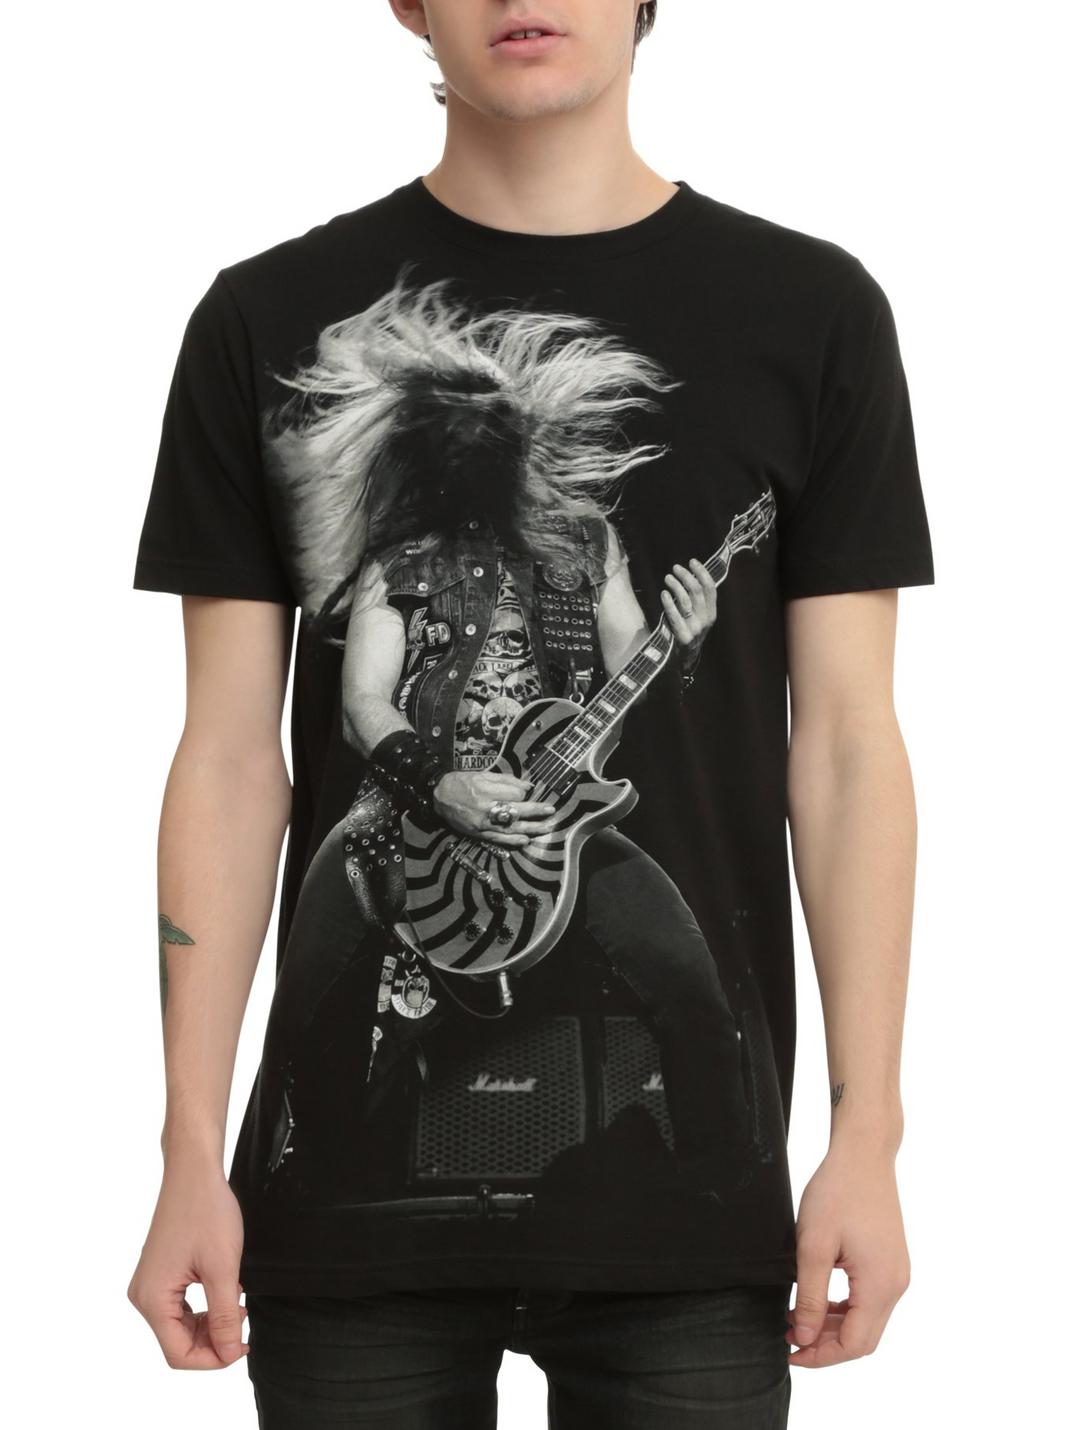 Black Label Society Doom Trooper T-shirt New Official Merchandise Zakk Wylde 